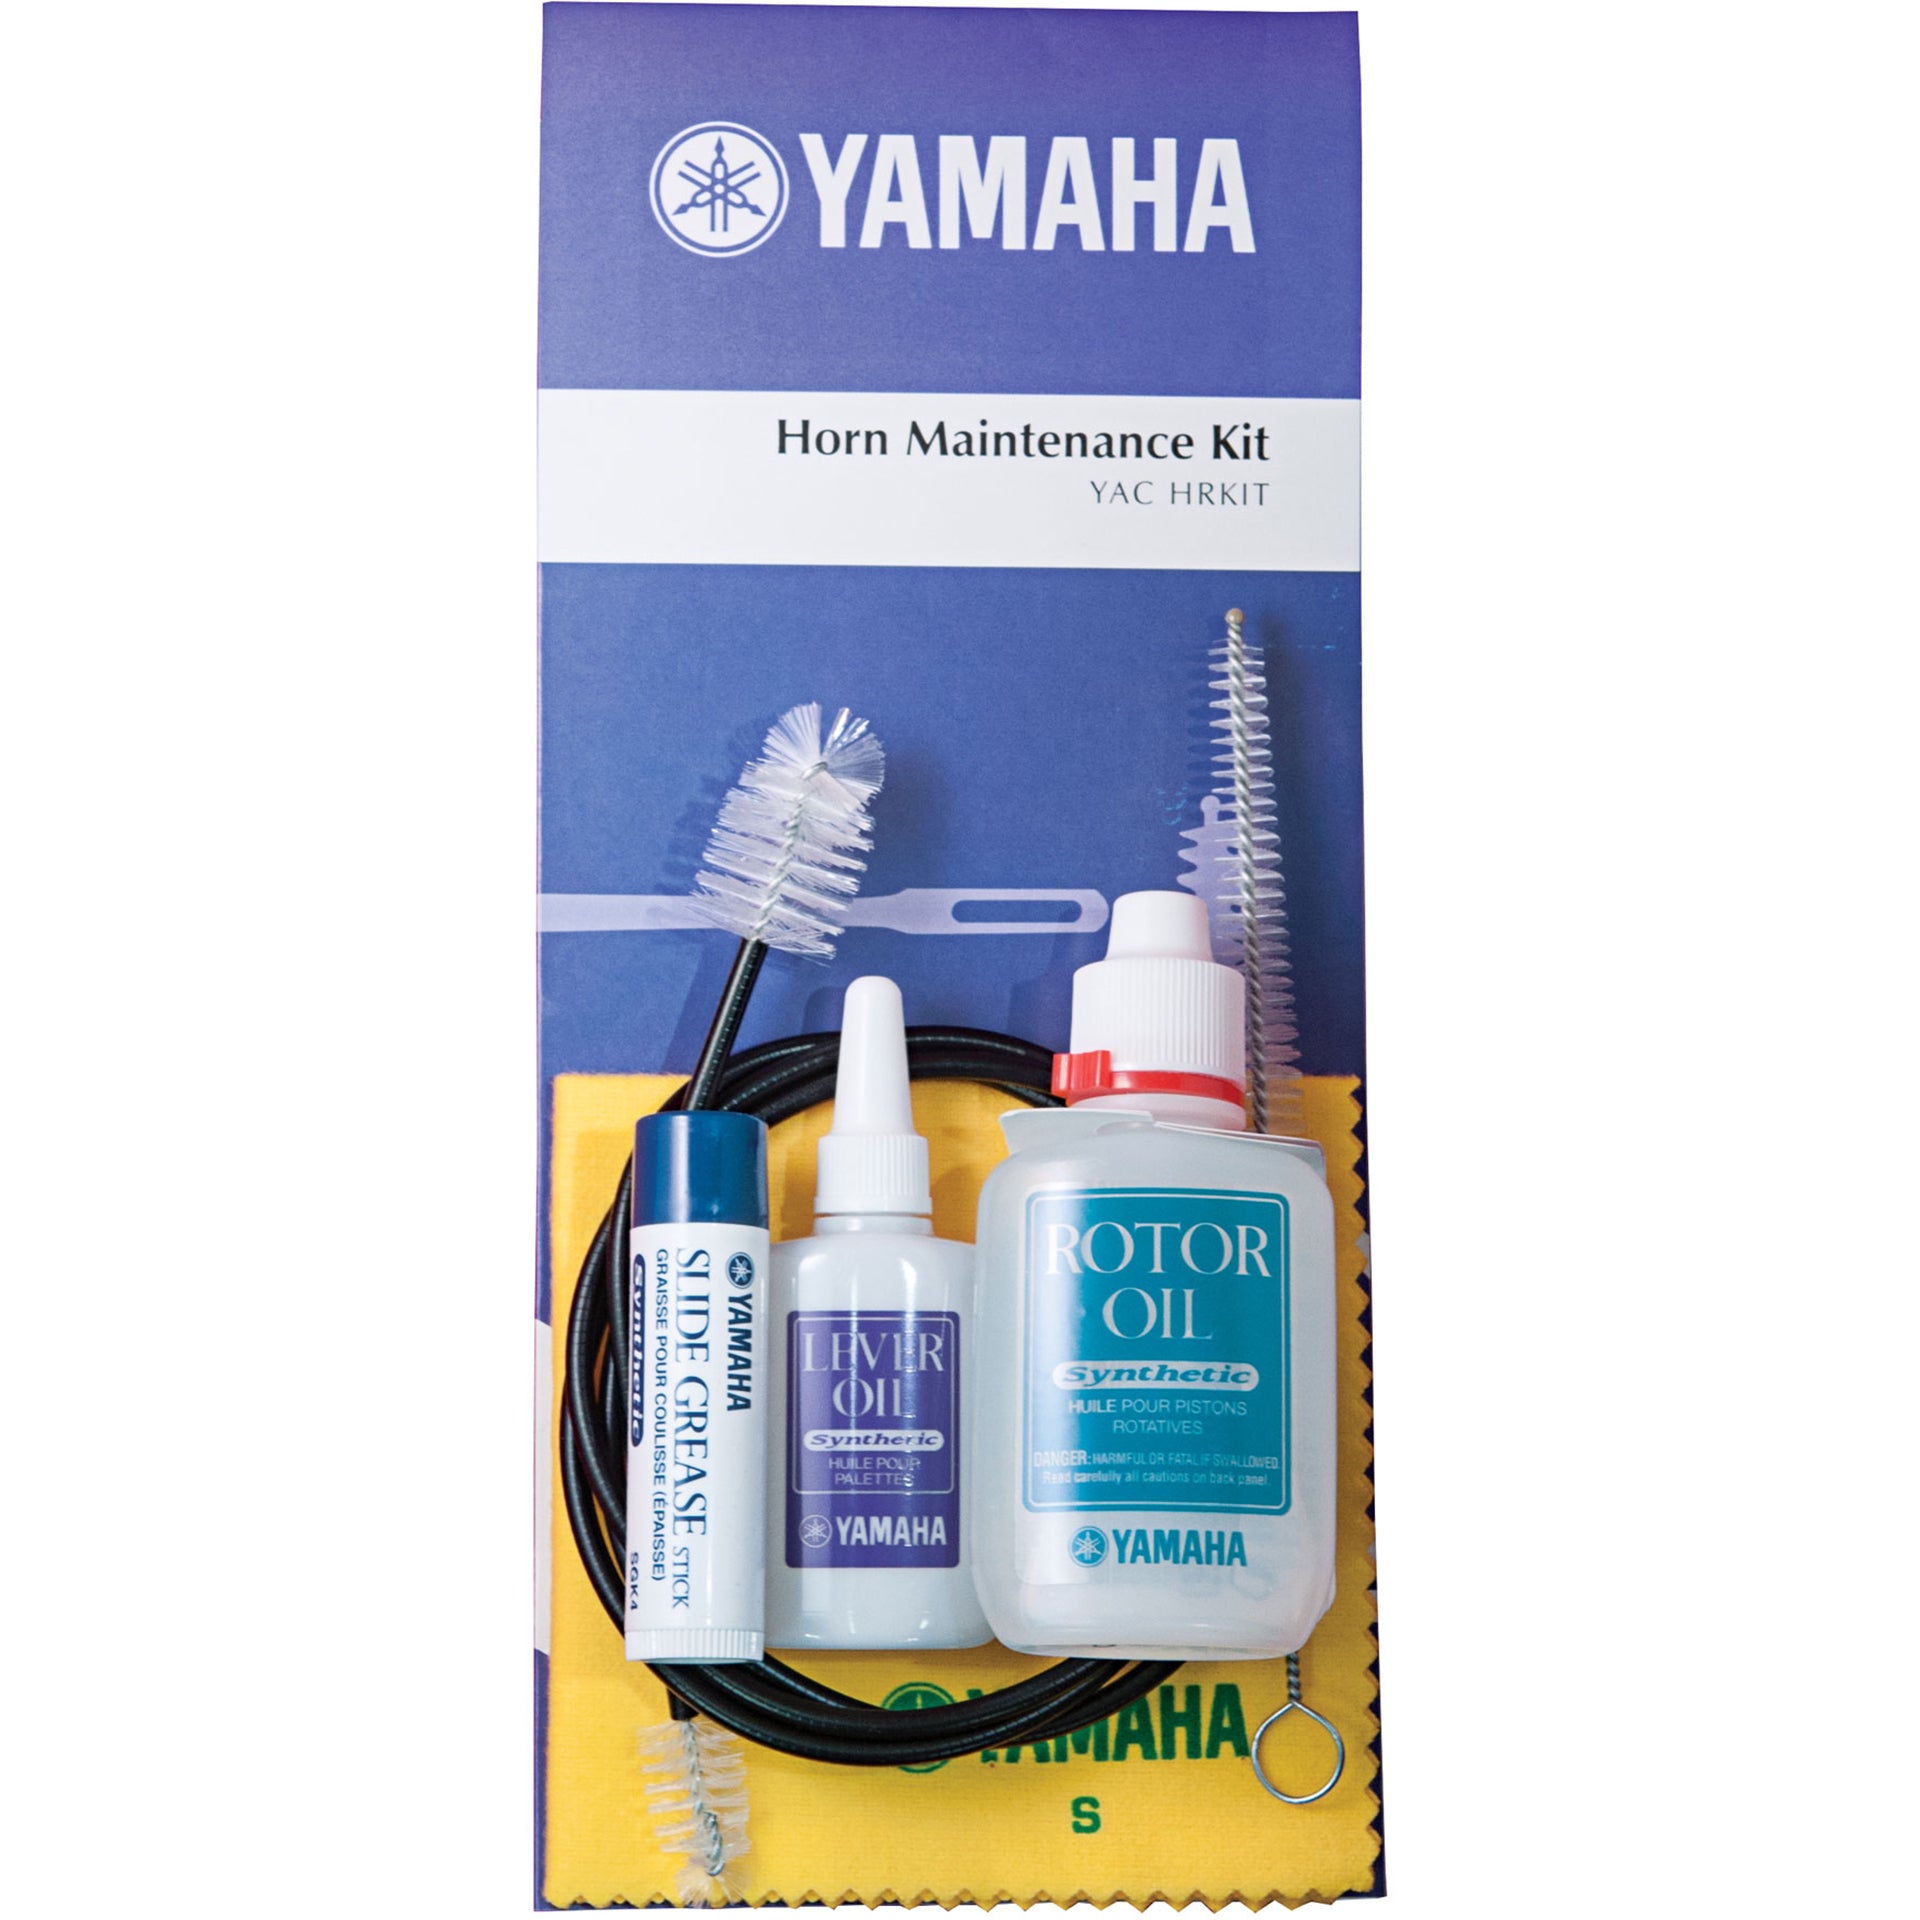 Yamaha Horn Maintenance Kit